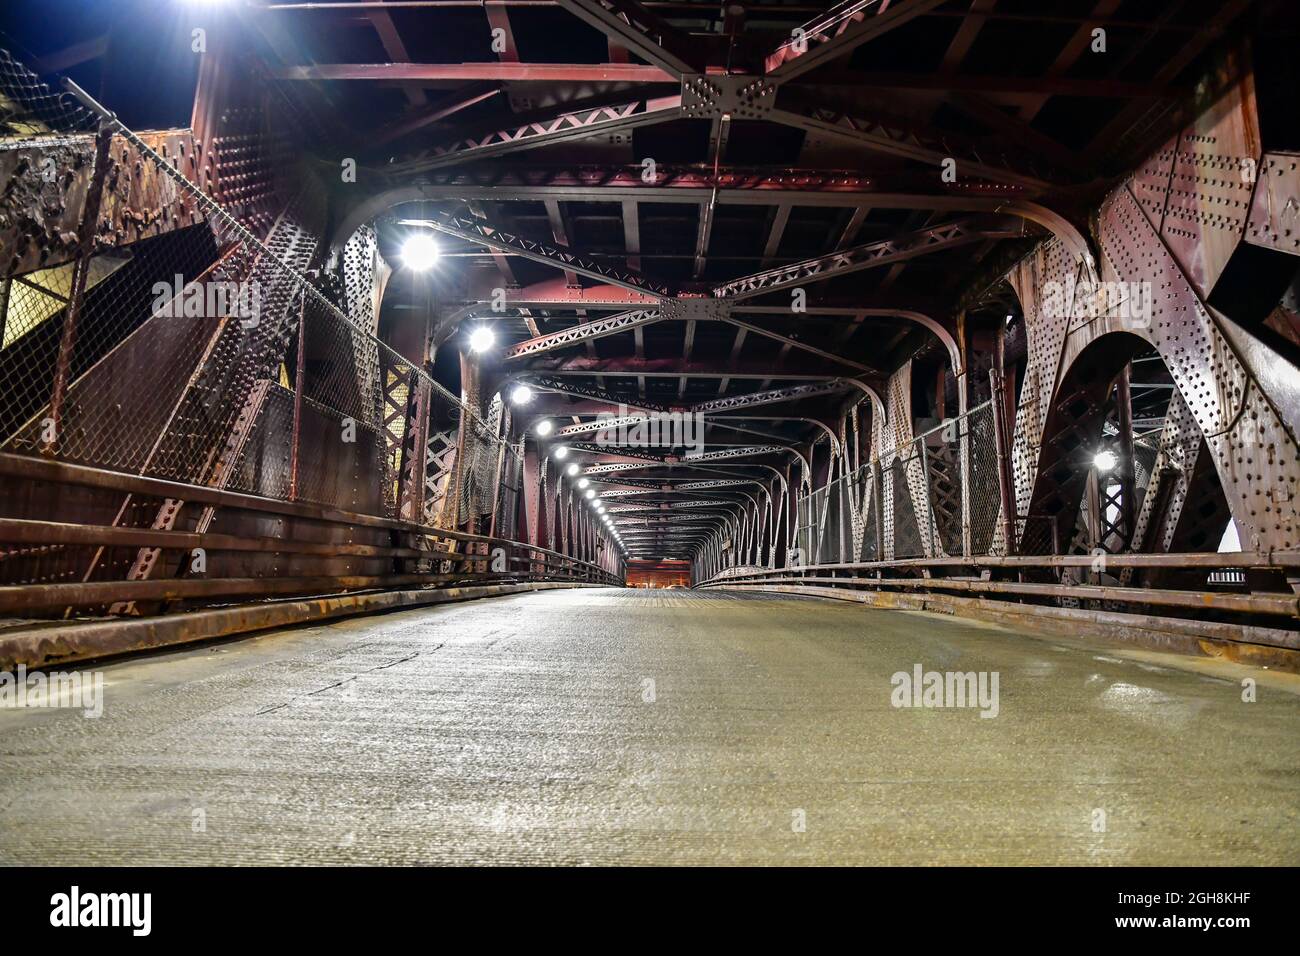 Leere alte urbane Straße und unterirdische Stahlbrücke Stockfoto